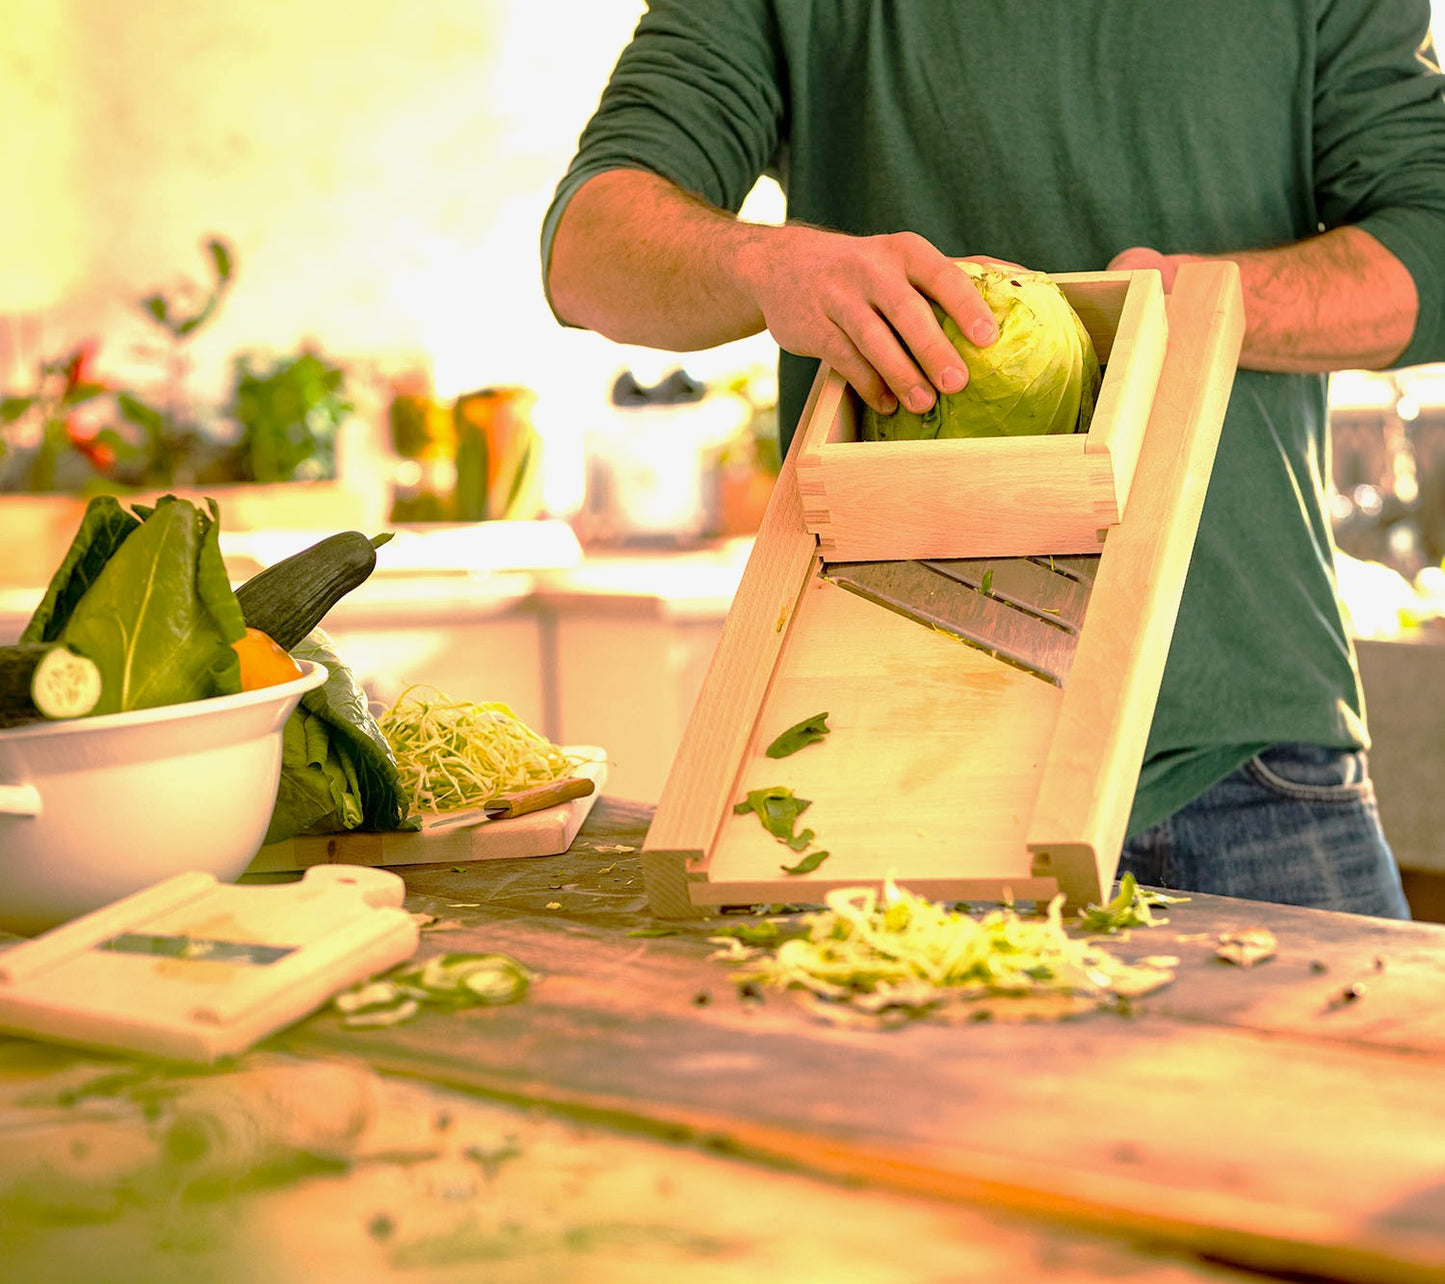 Sternsteiger vegetable slicer vegetable slicer cabbage slicer wood 3 knives + drawer L150 cm, wood 